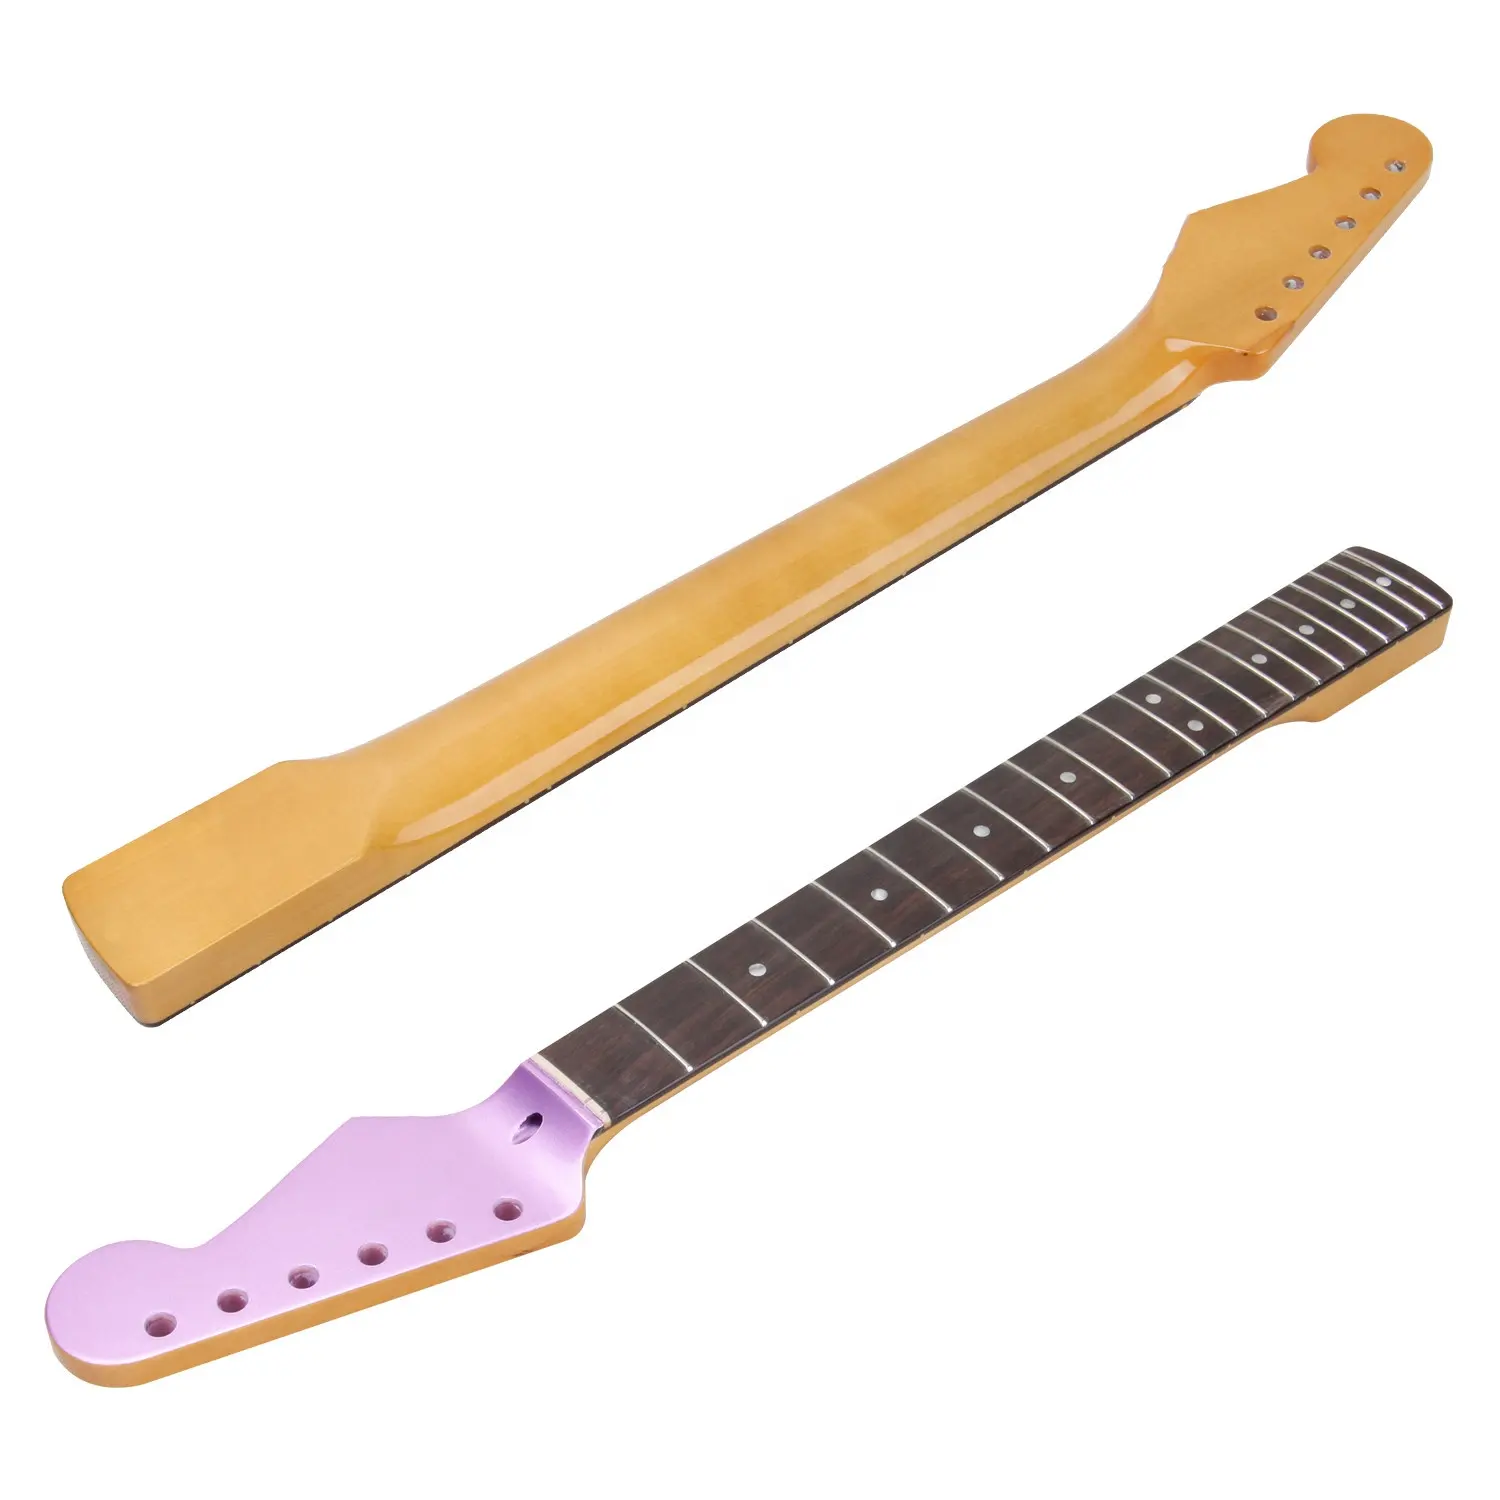 6 string 21 fret ST electric guitar neck handle rose wood finger board guitar handle manufacturer wholesale